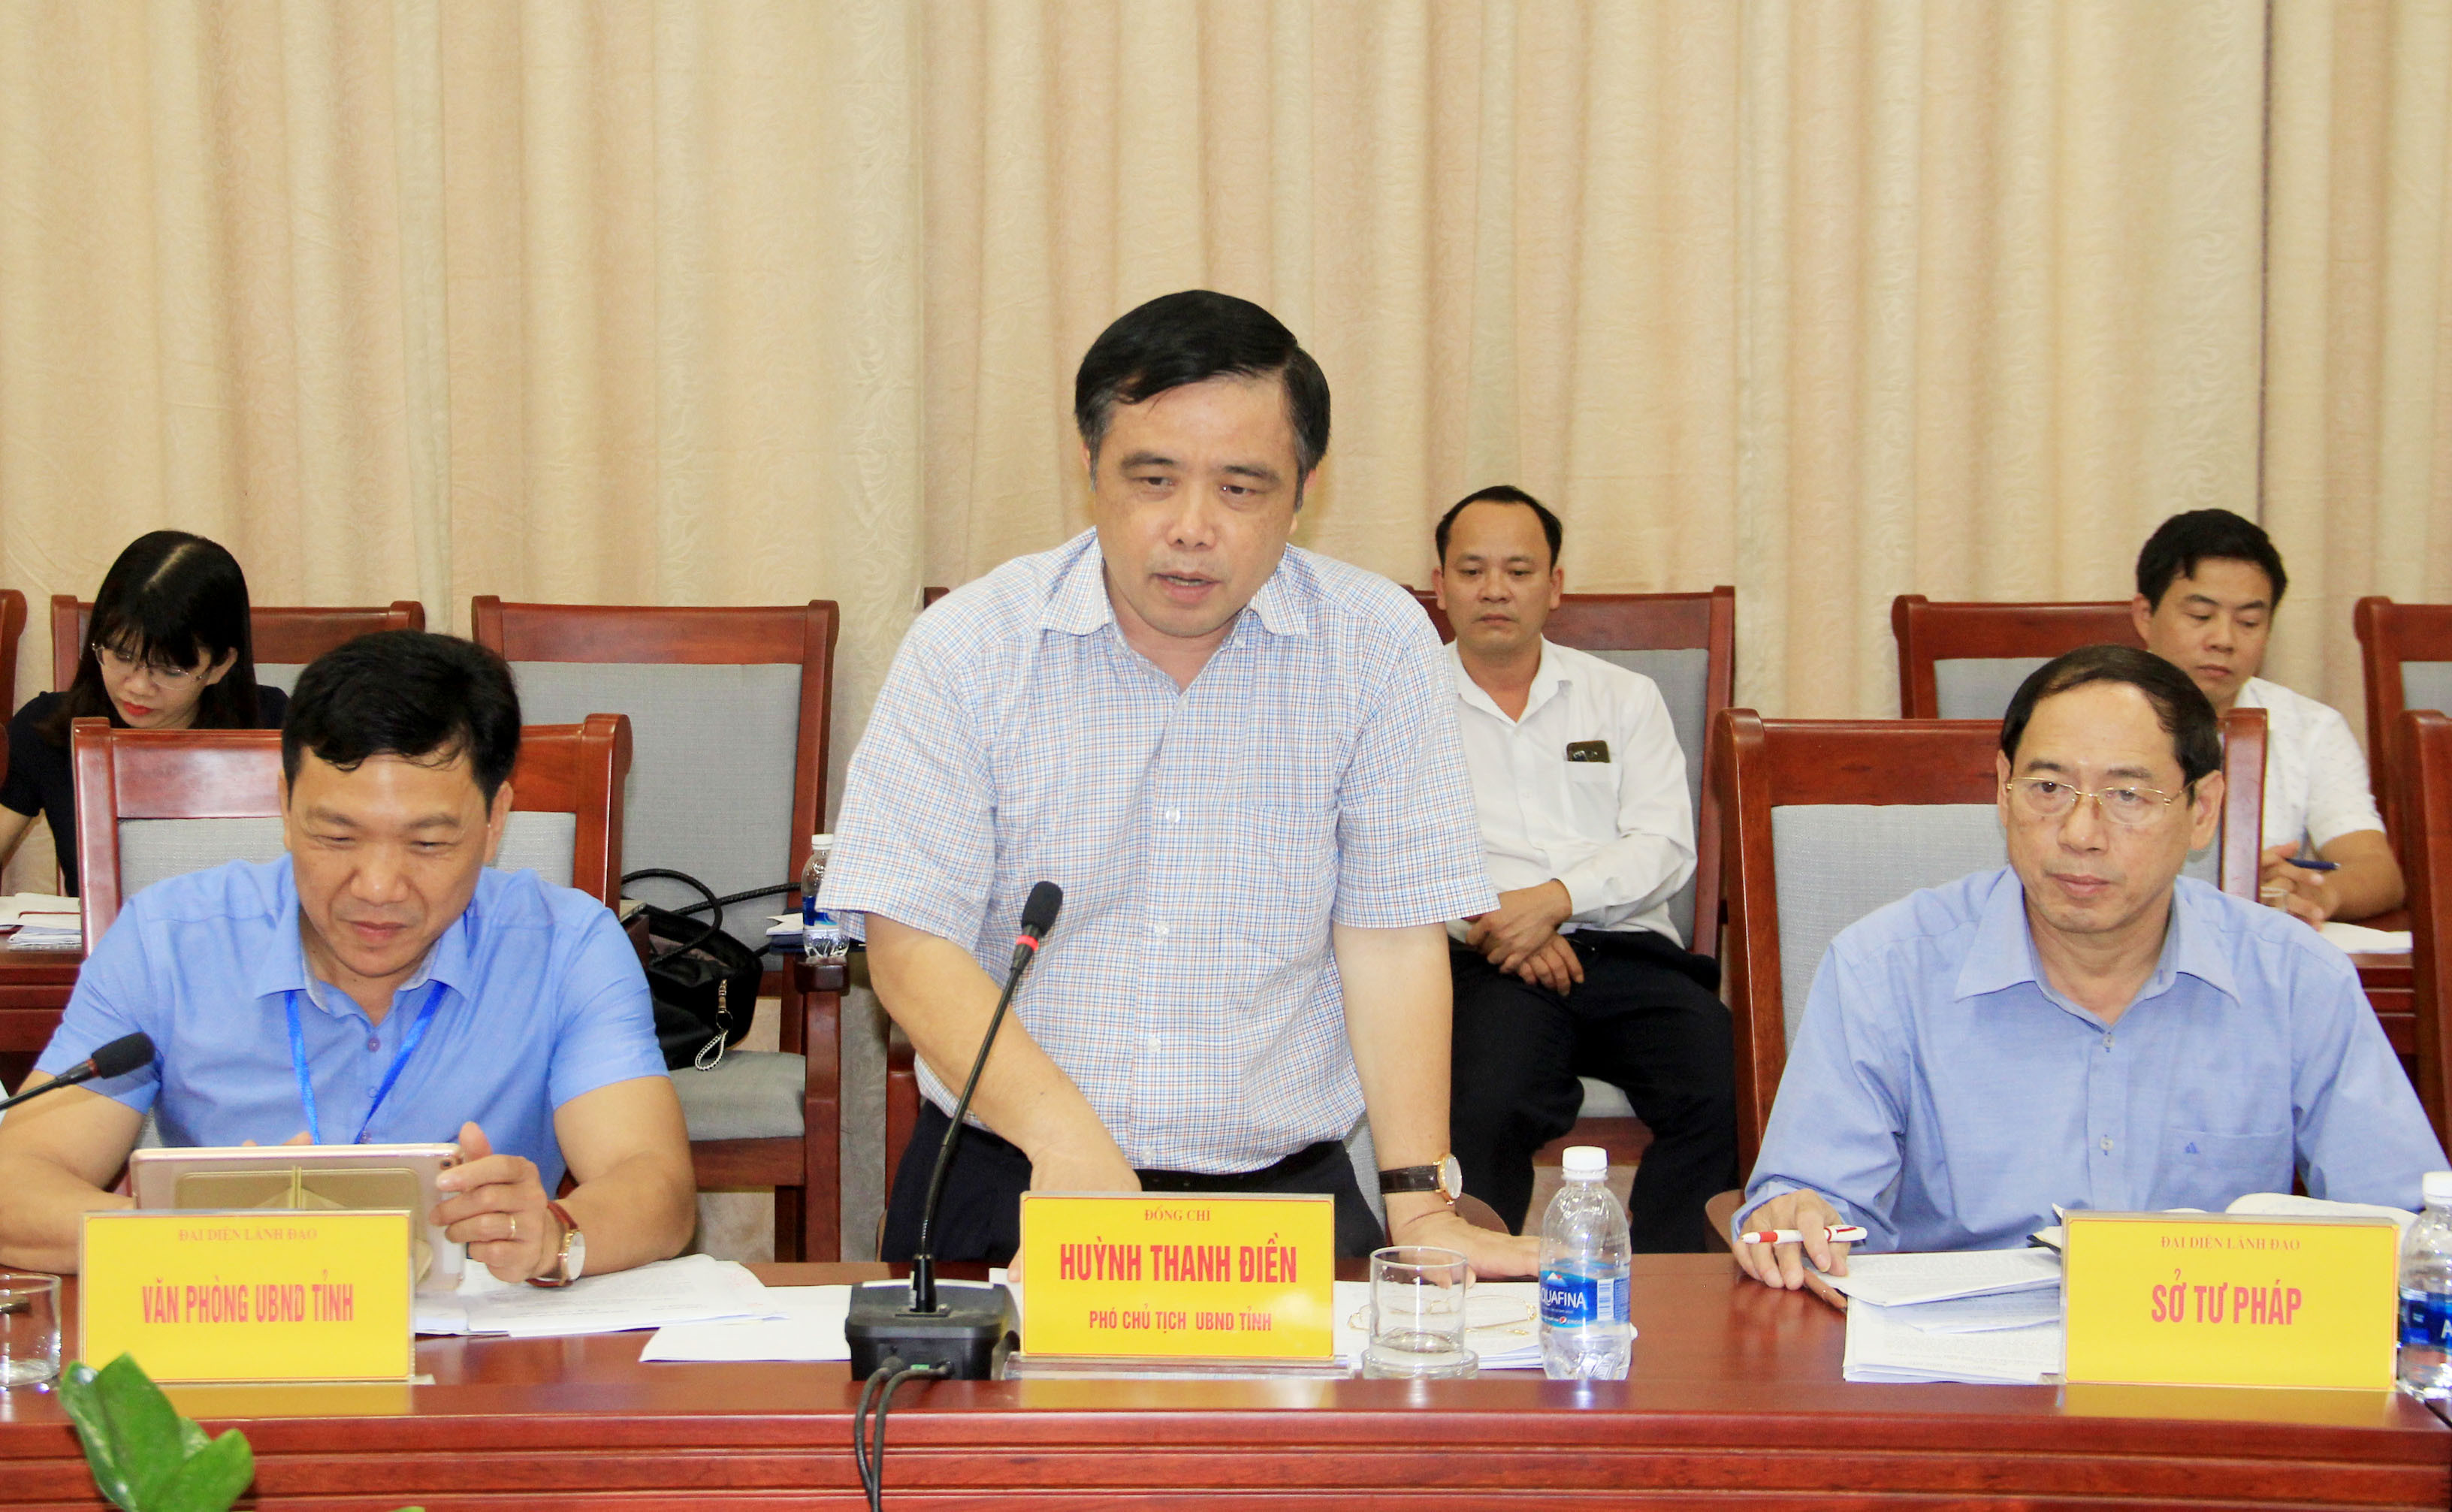 Đồng chí Huỳnh Thanh Điền - Phó Chủ tịch UBND tỉnh trao đổi thêm những nội dung mà đoàn yêu cầu. Ảnh: Phạm Bằng